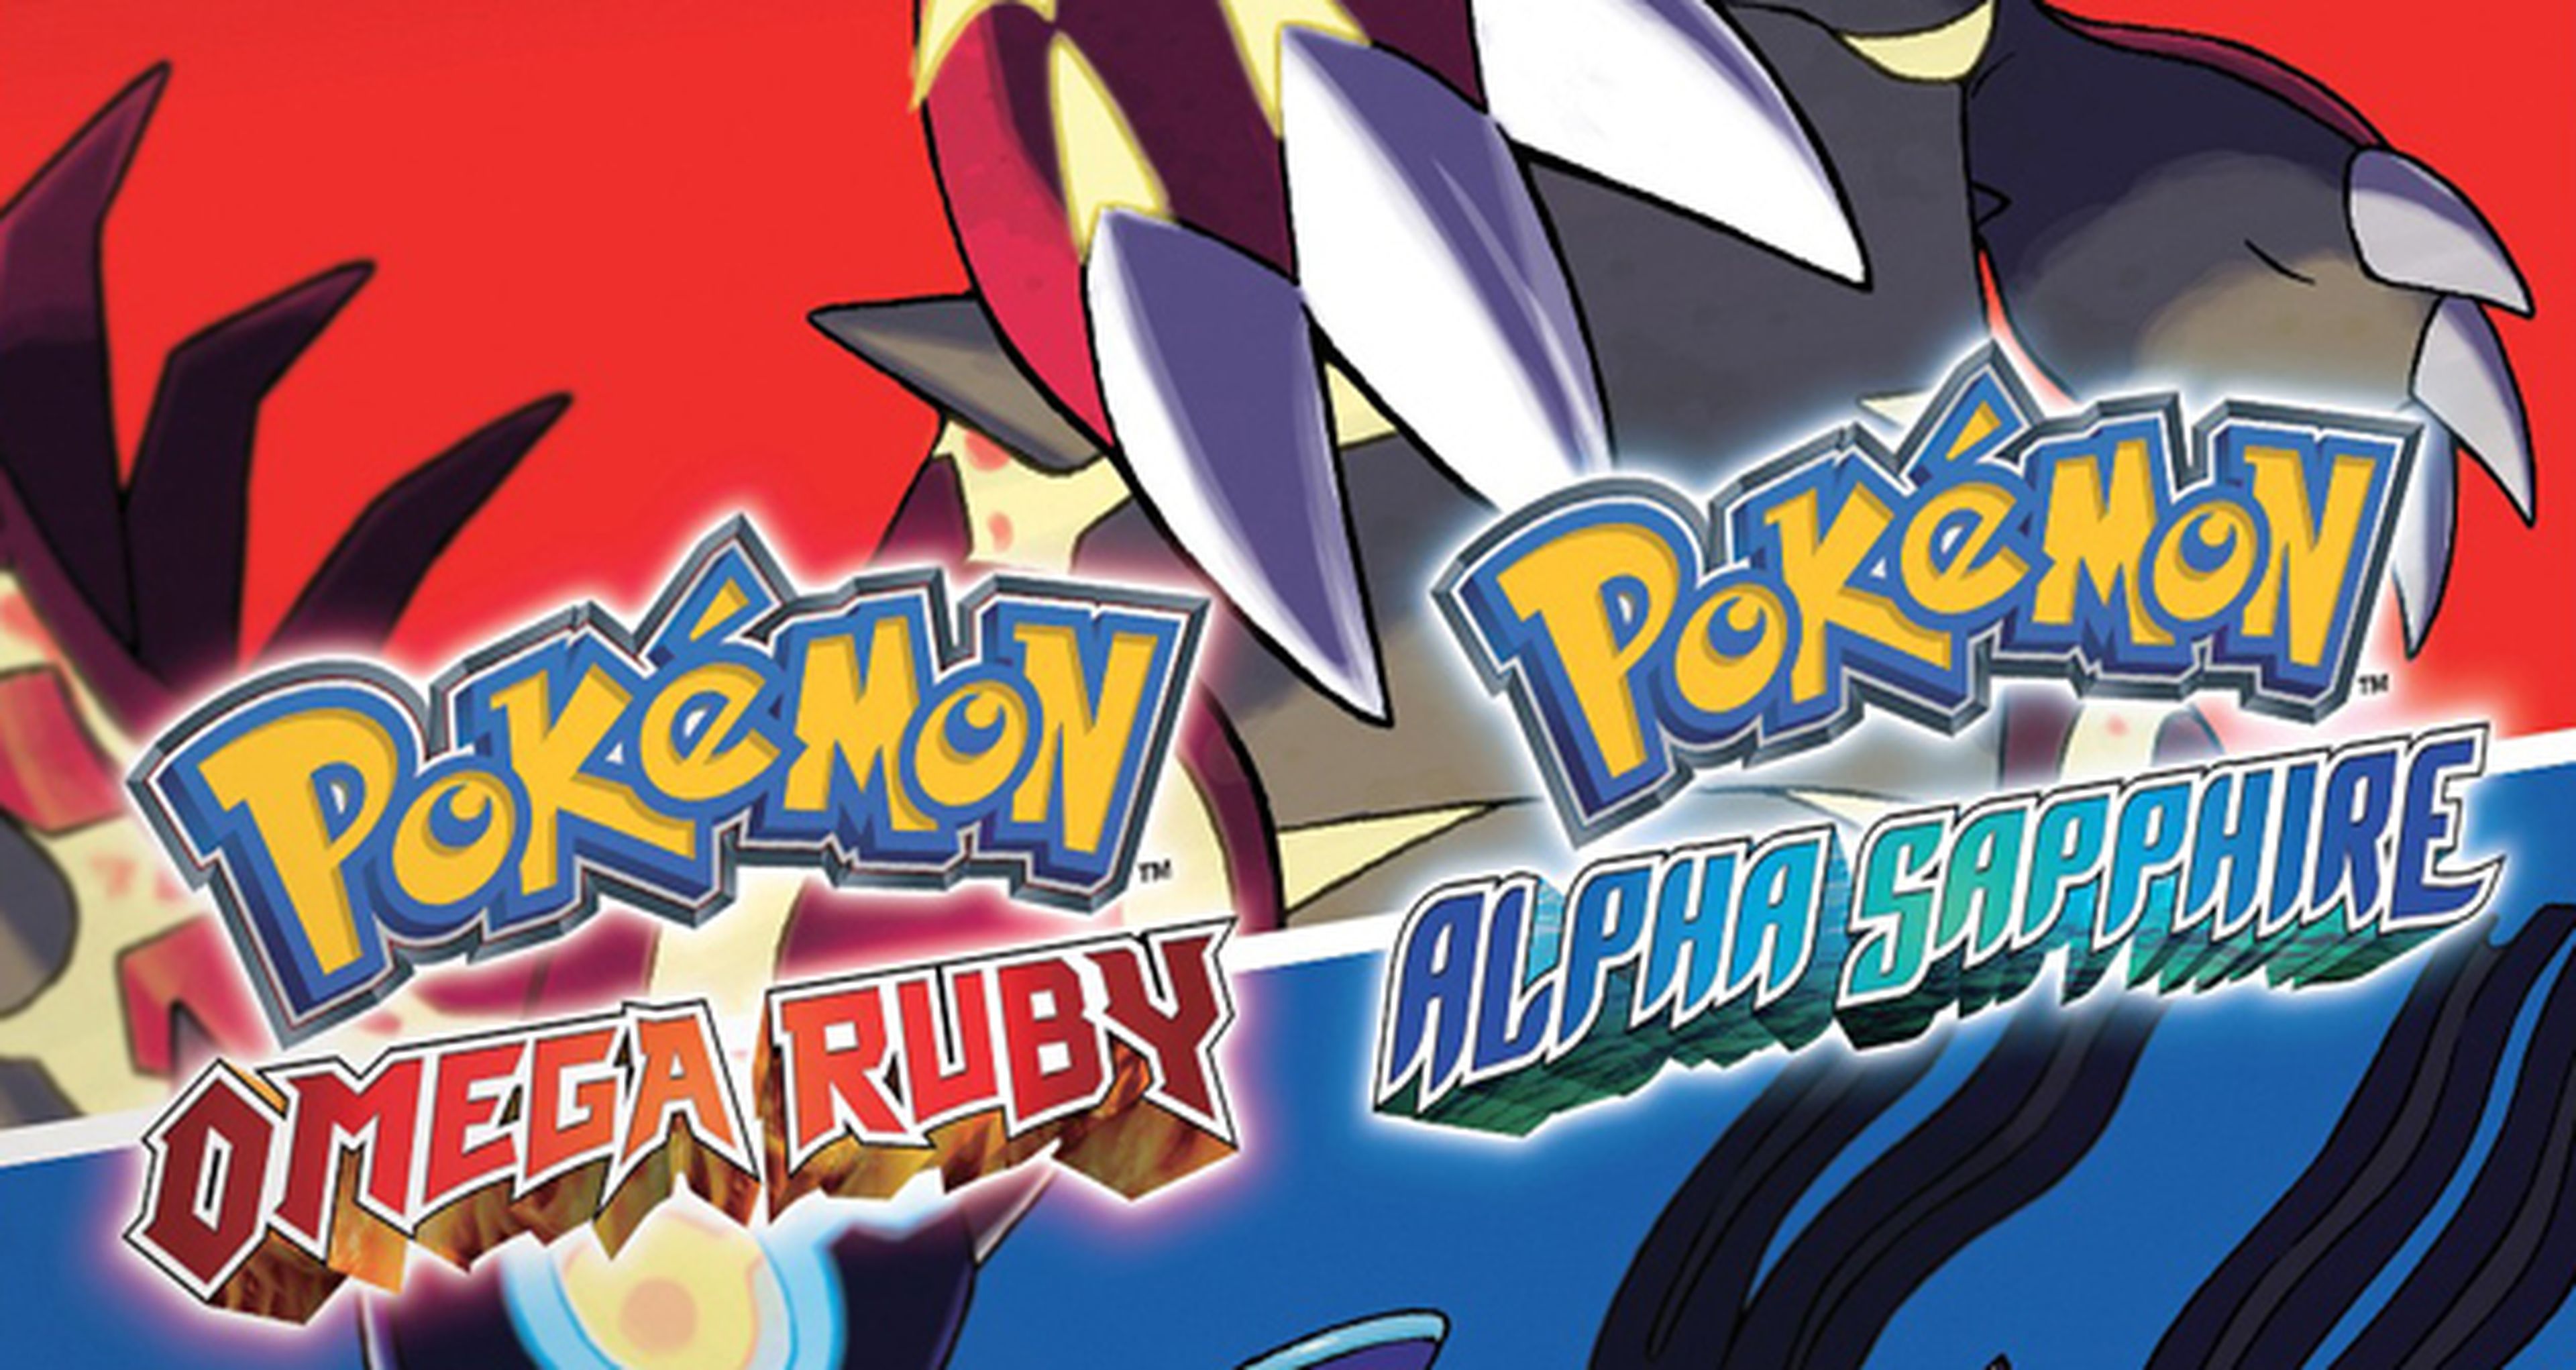 La guía oficial de Pokémon Rubí Omega y Zafiro Alfa llegará en noviembre